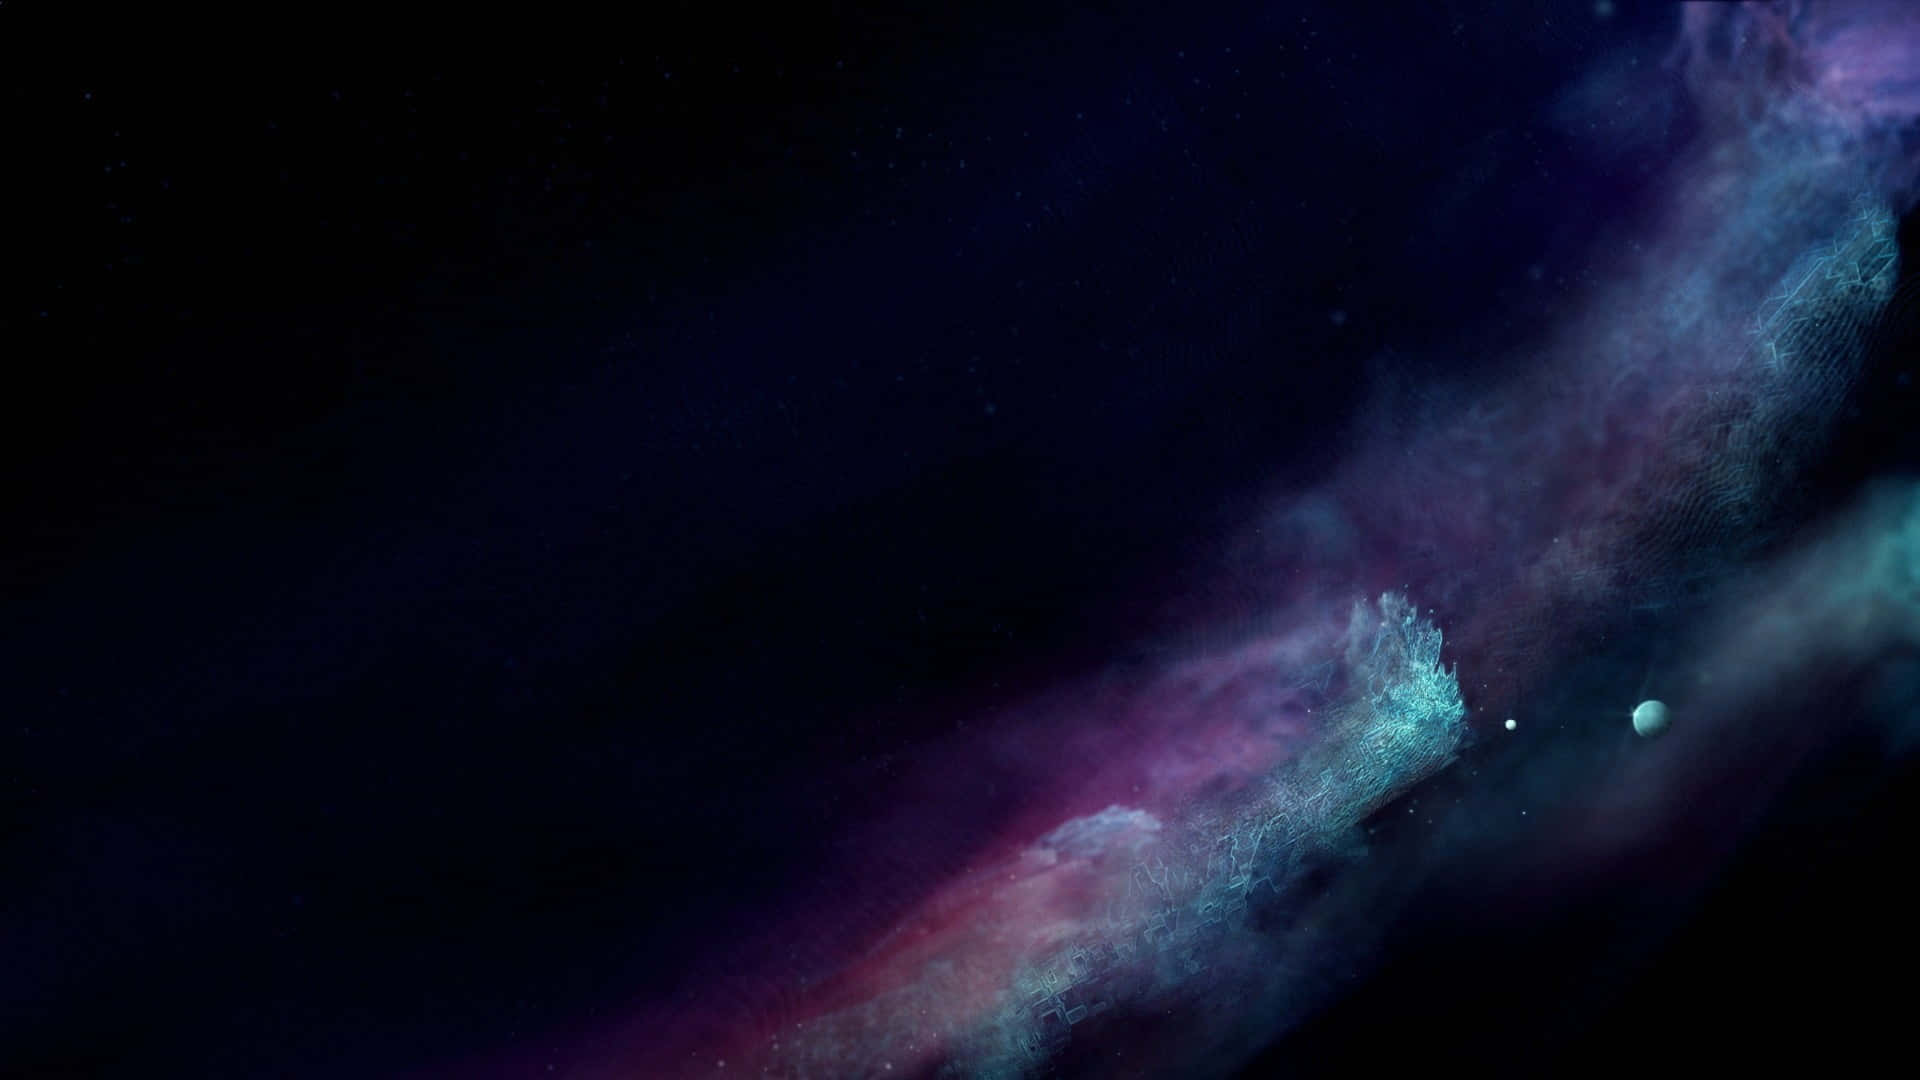 Unremolino Cósmico Pulsante De Tonos Violeta Oscuro Y Ónice, Capturado Desde Las Profundidades Del Universo. Fondo de pantalla